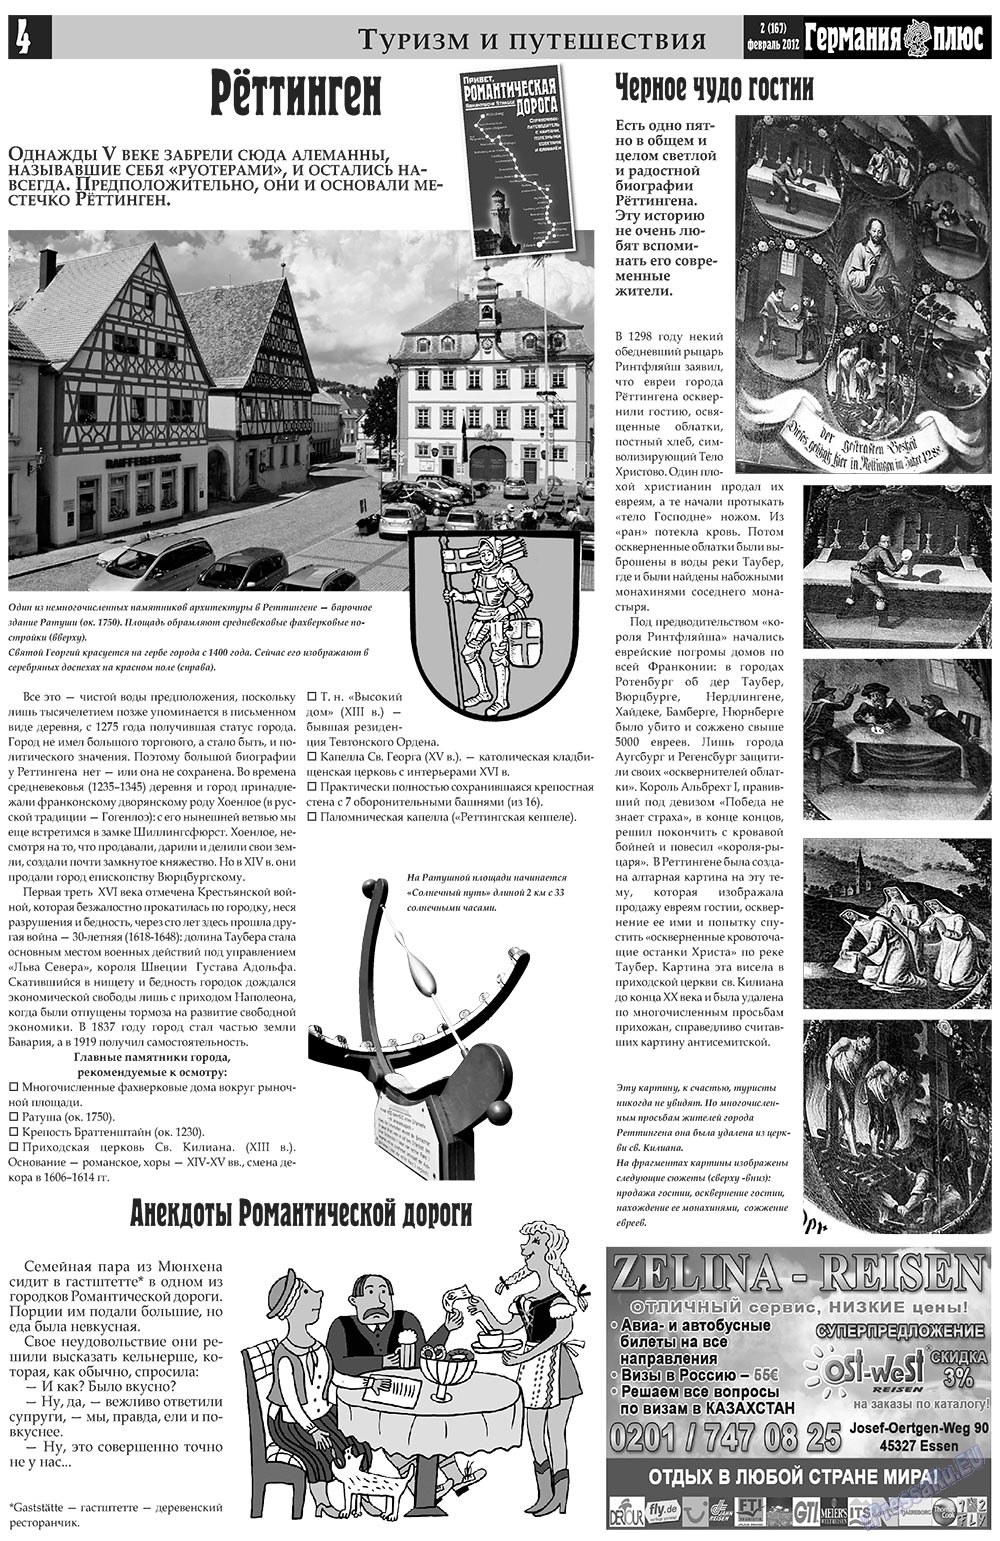 Германия плюс, газета. 2012 №2 стр.4